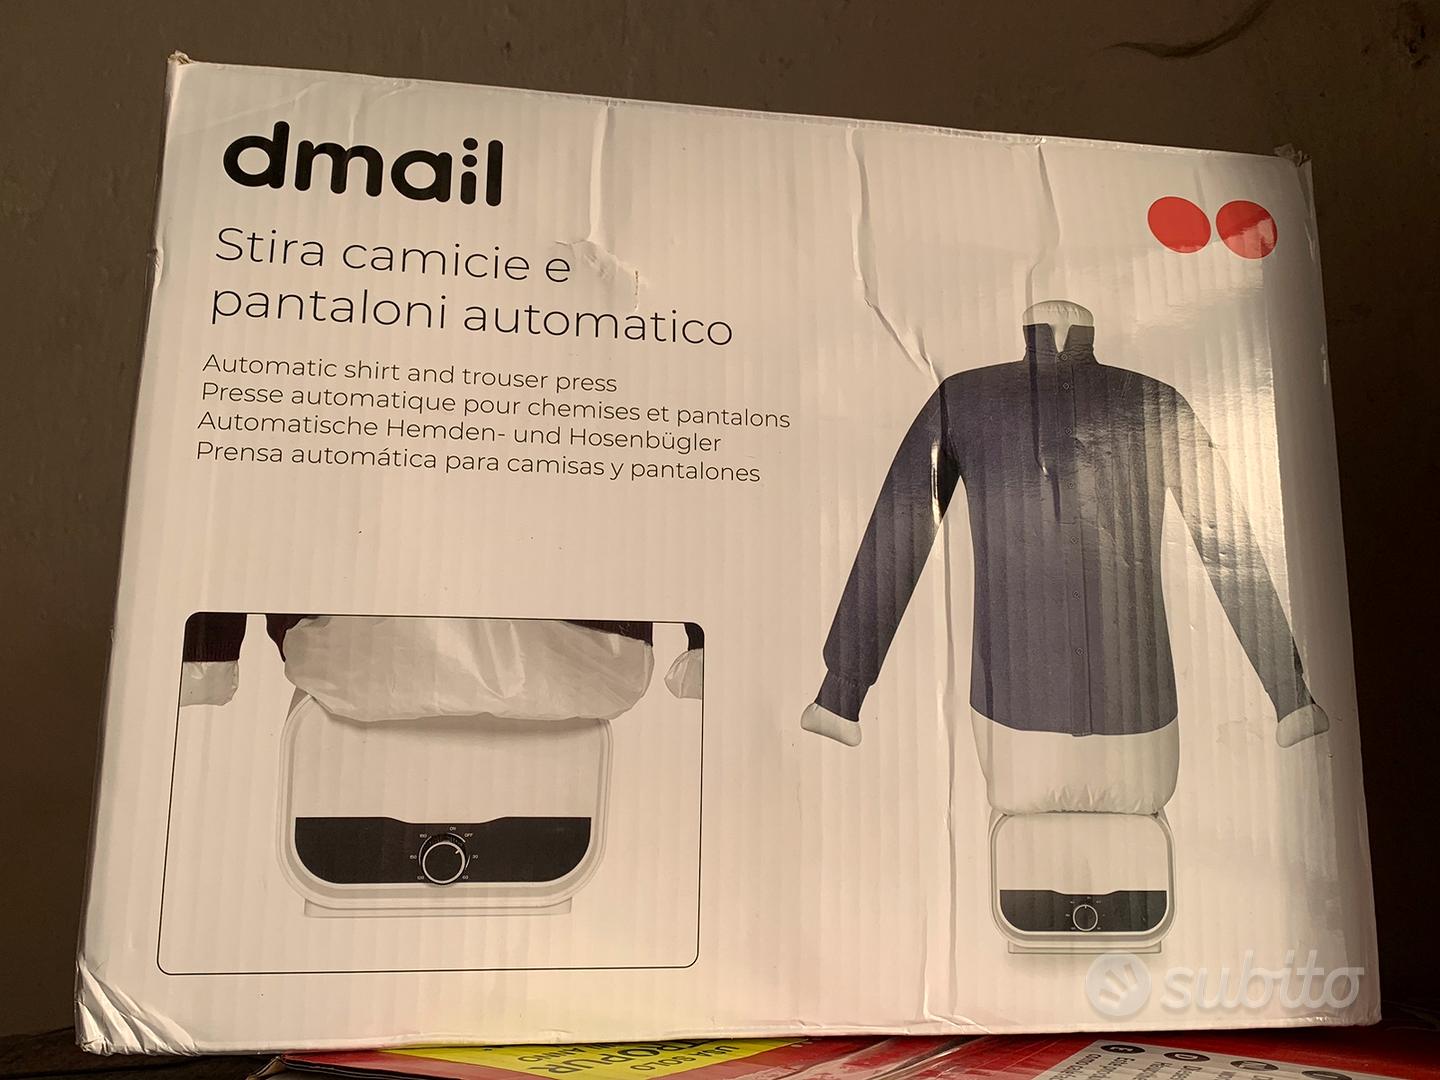 Stira camicie e pantaloni automatico - Elettrodomestici In vendita a Torino